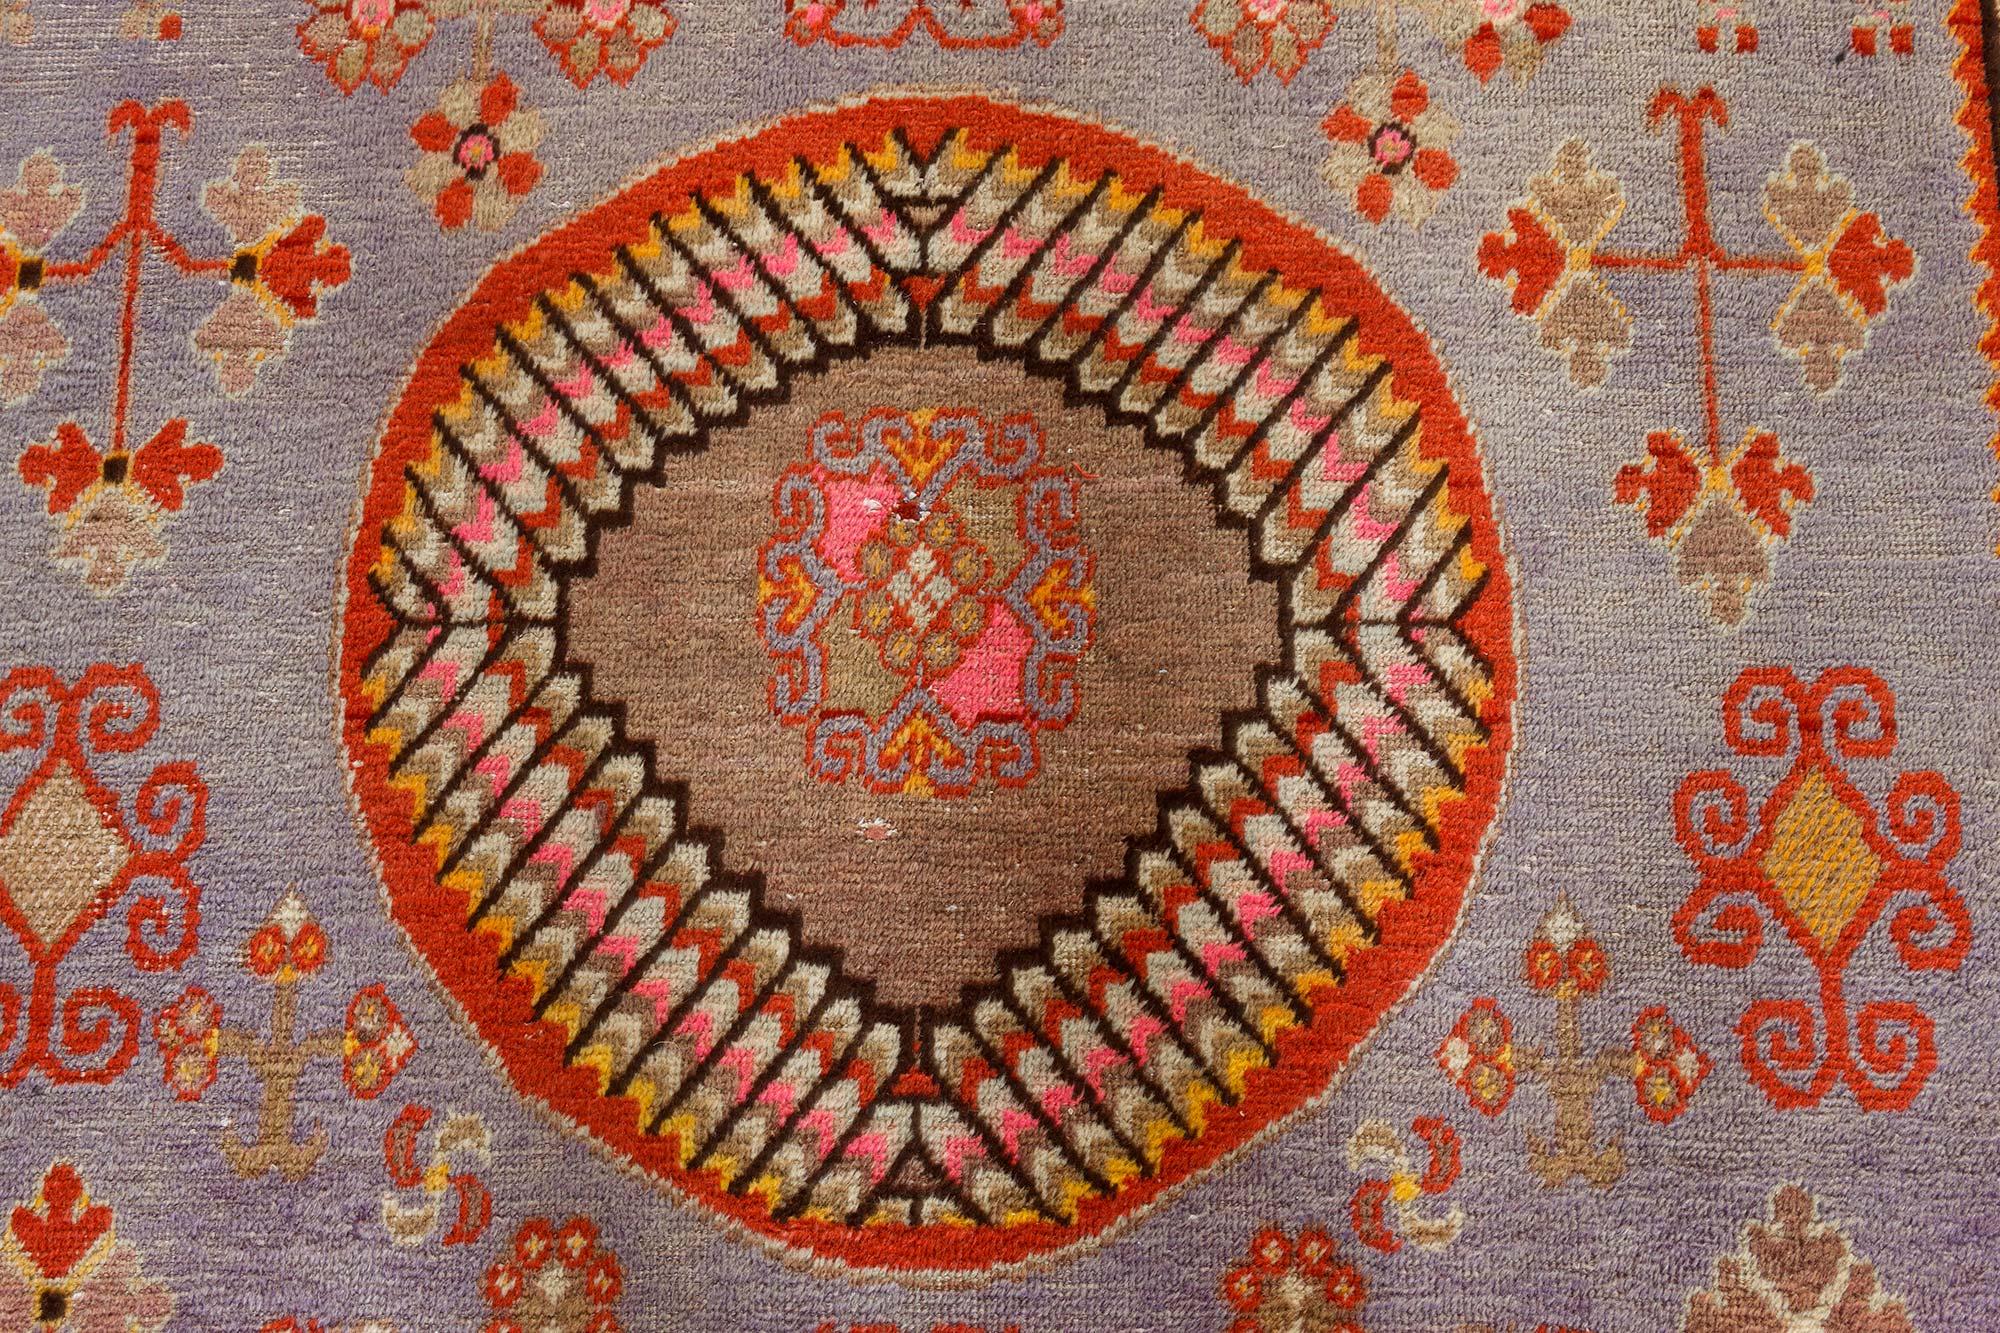 Samarkand-Teppich aus der Mitte des 20. Jahrhunderts aus brauner, goldener, oranger, rosa, violetter und roter Wolle.
Größe: 6'5